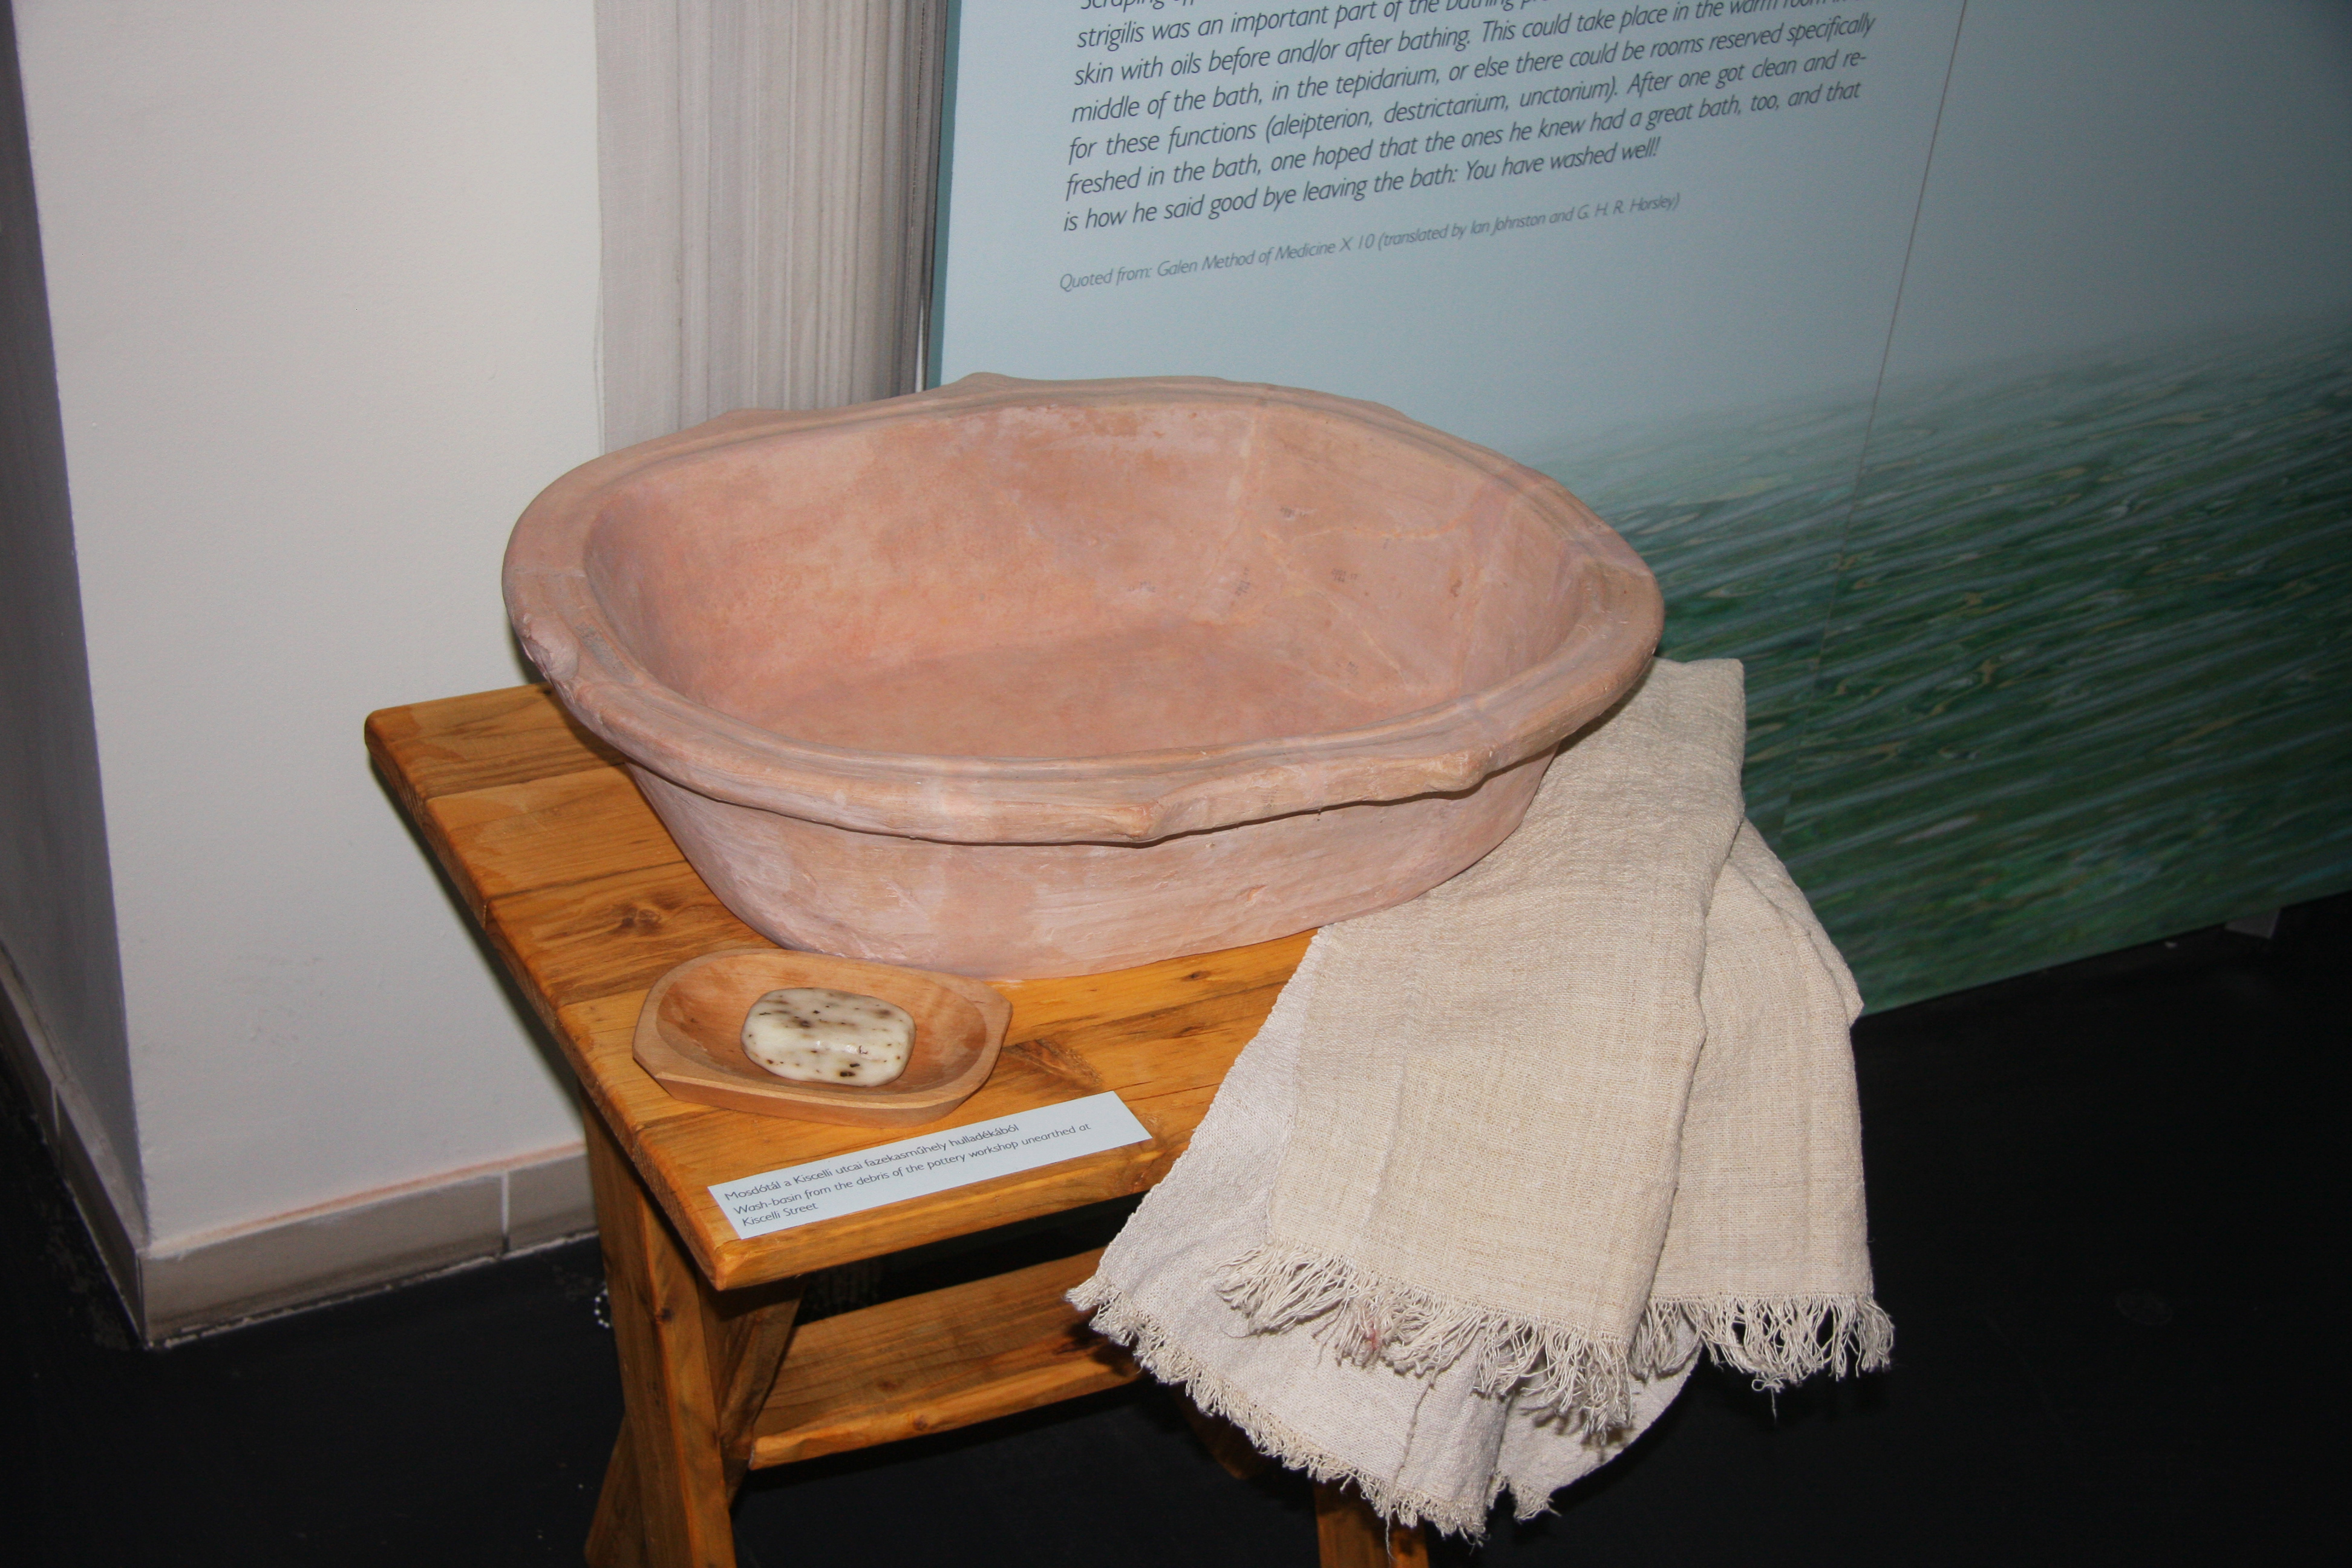 Fürdőkád ókori mintára – csupa meglepetés az otthoni spa története